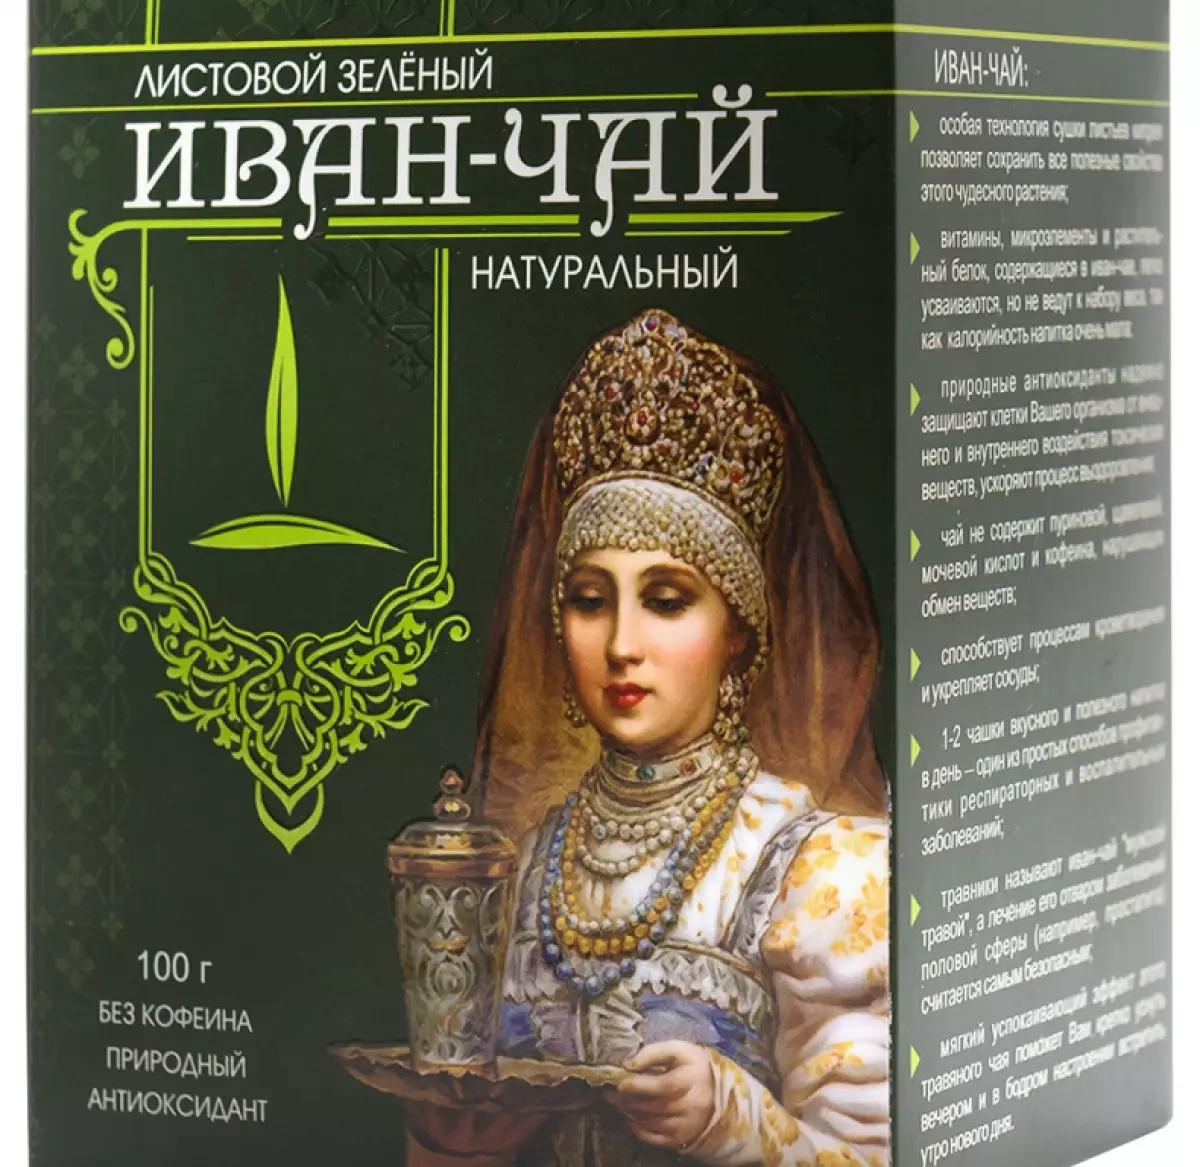 Продукция из иван-чая «Емельяновской биофабрики» теперь может быть маркирована знаком органической продукции международного образца.